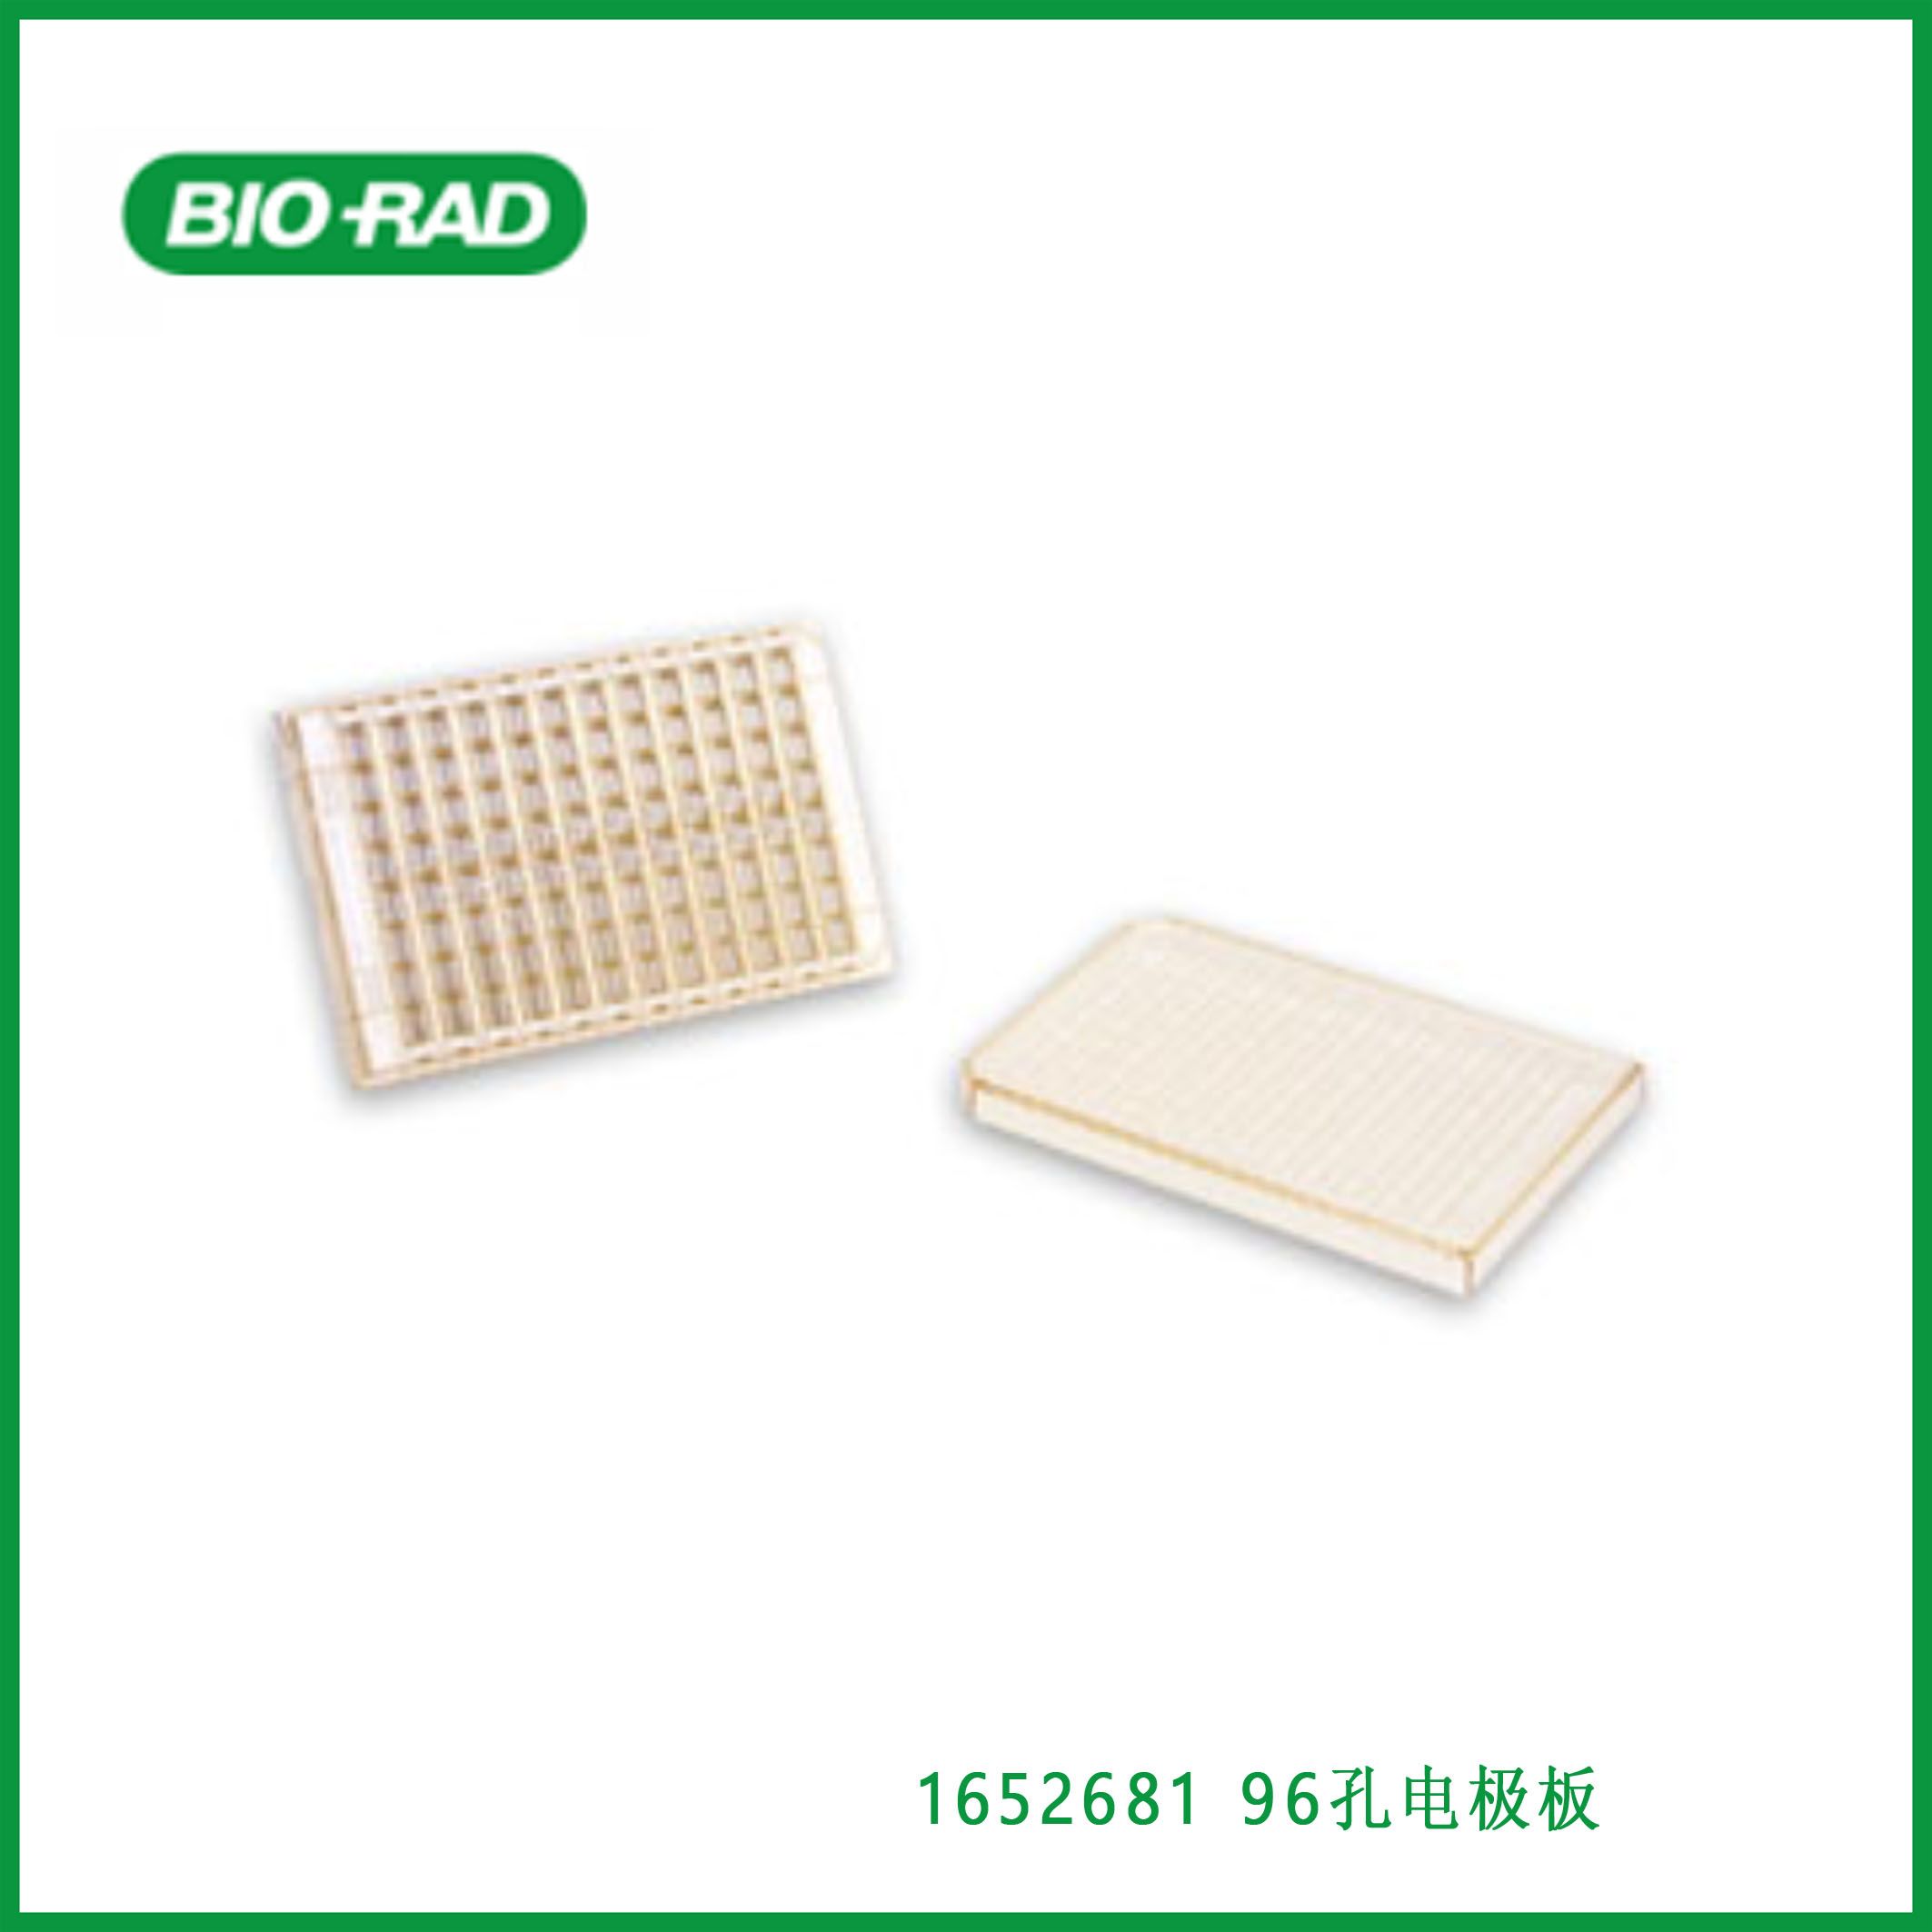 伯乐Bio-Rad1652681 96-Well Electroporation Plate。96孔电极板,现货